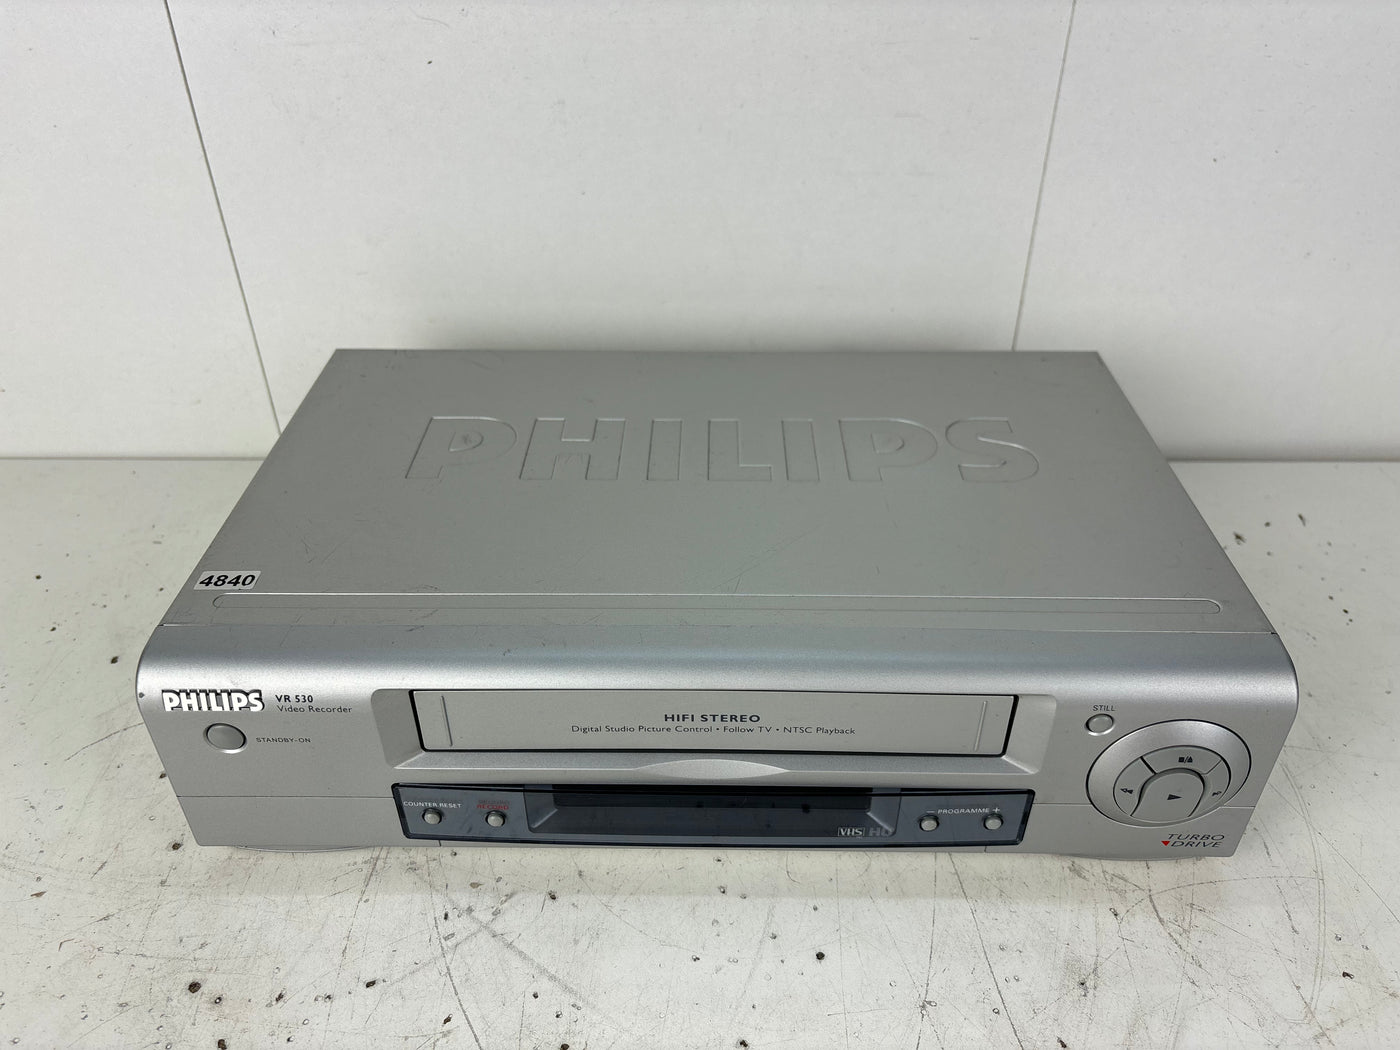 Philips VR 530 Video Cassette Recorder